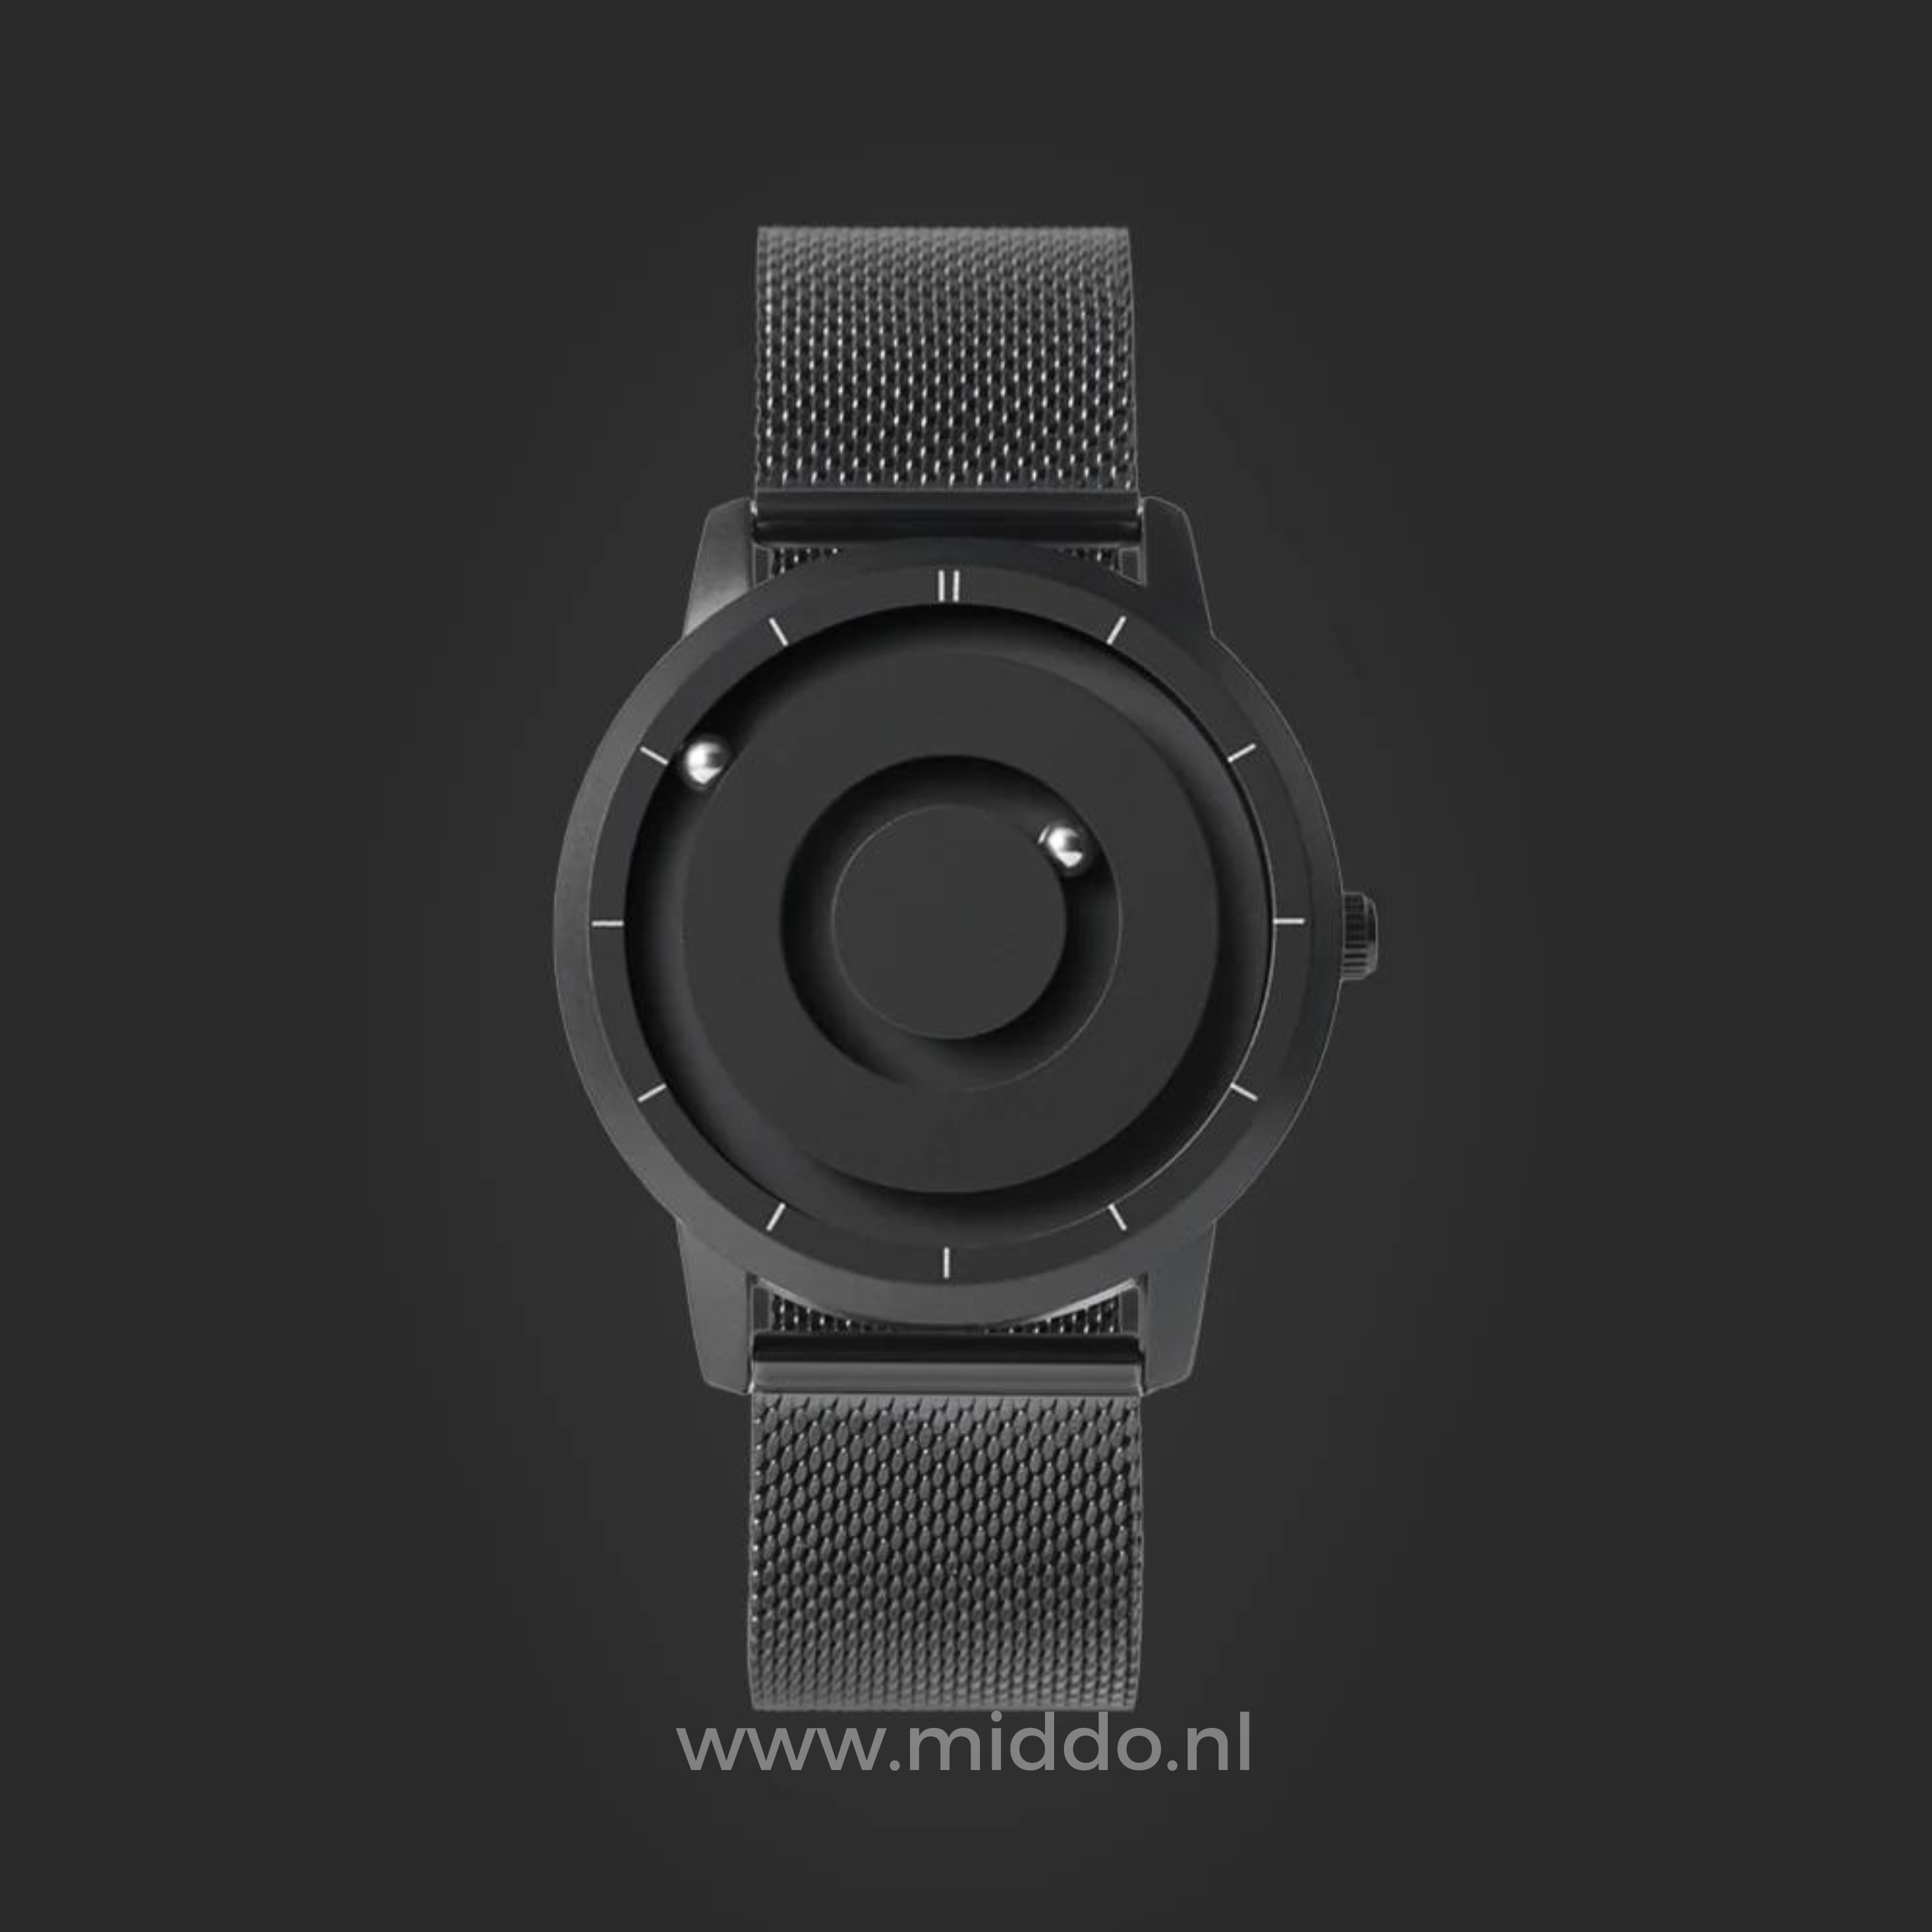 Zwarte Magnetique horloge op een donkere achtergrond